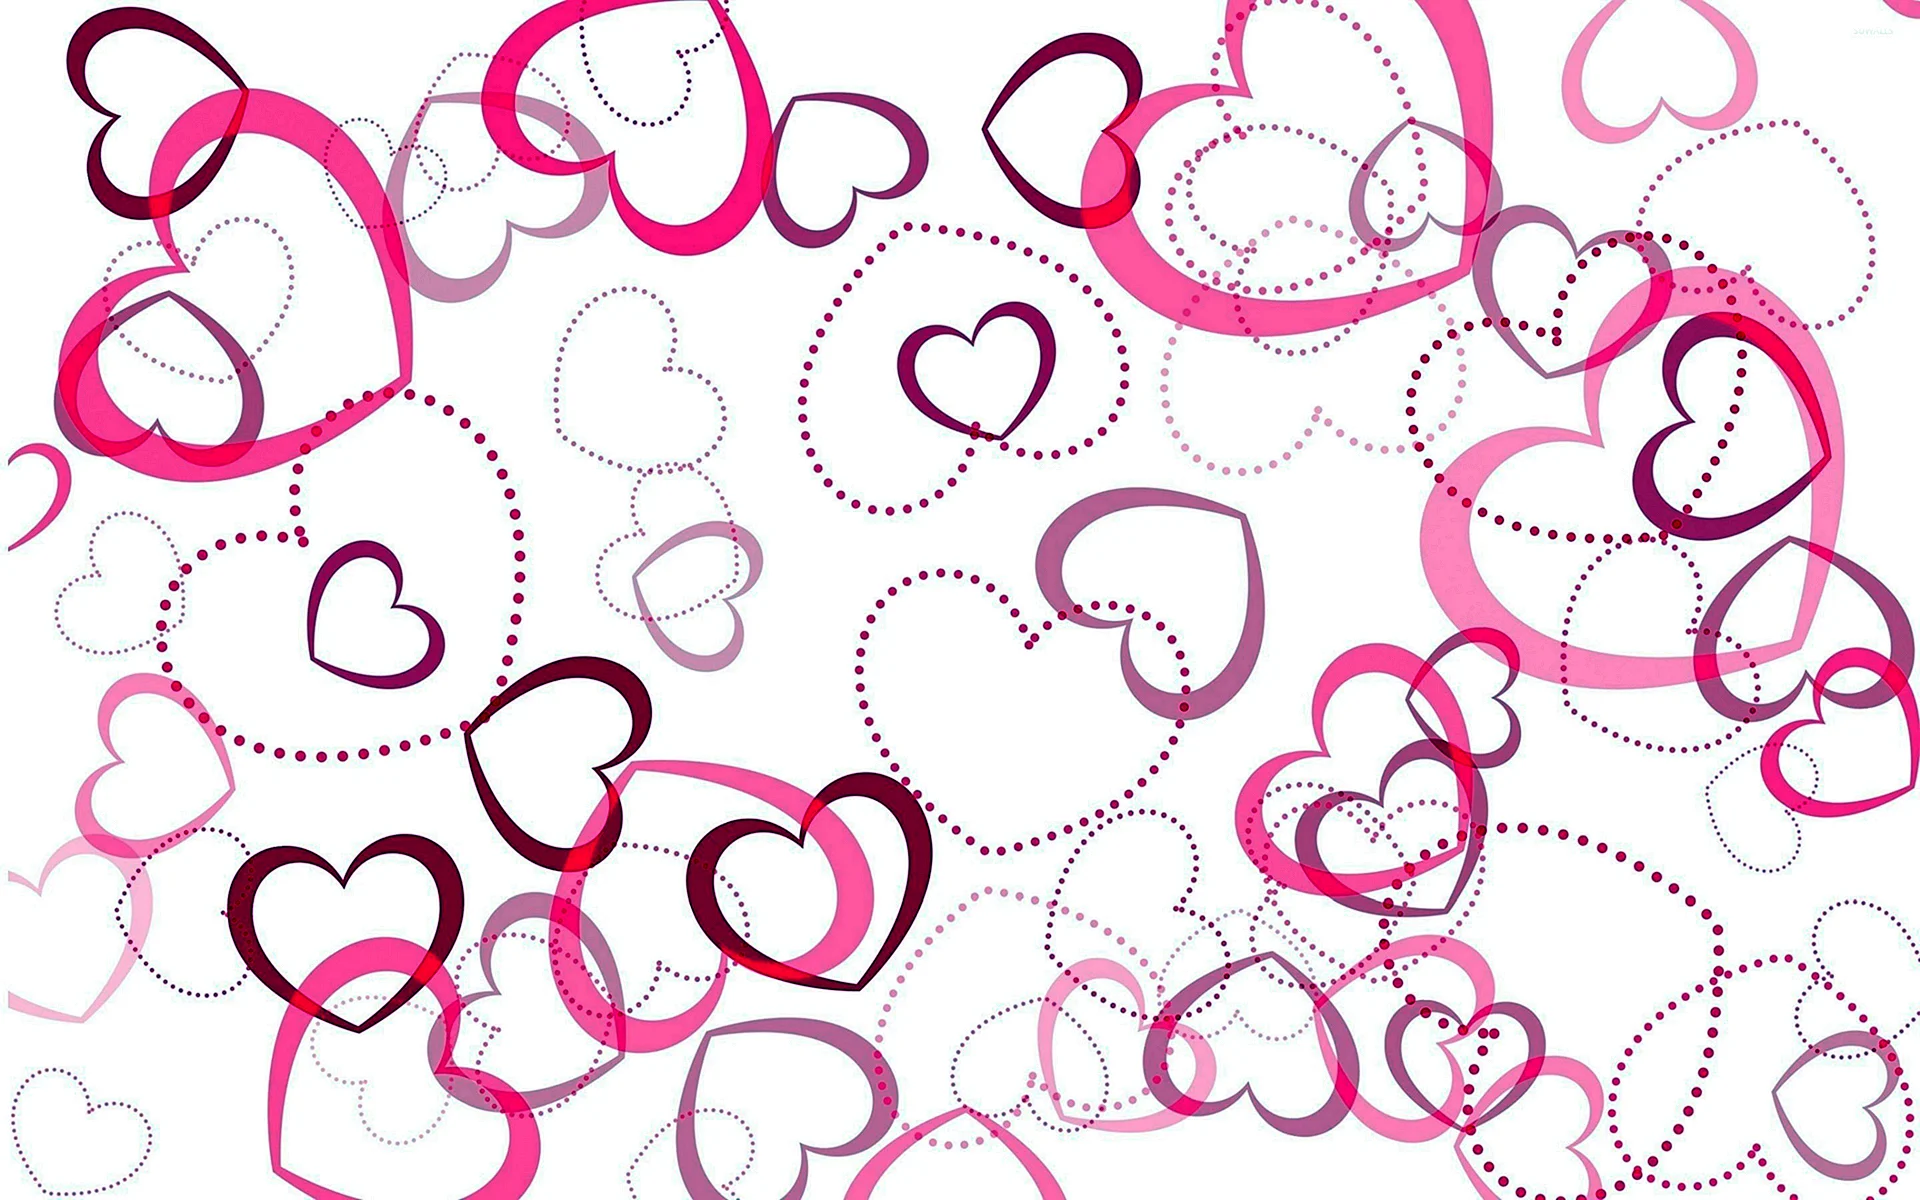 Heart Pattern Wallpaper